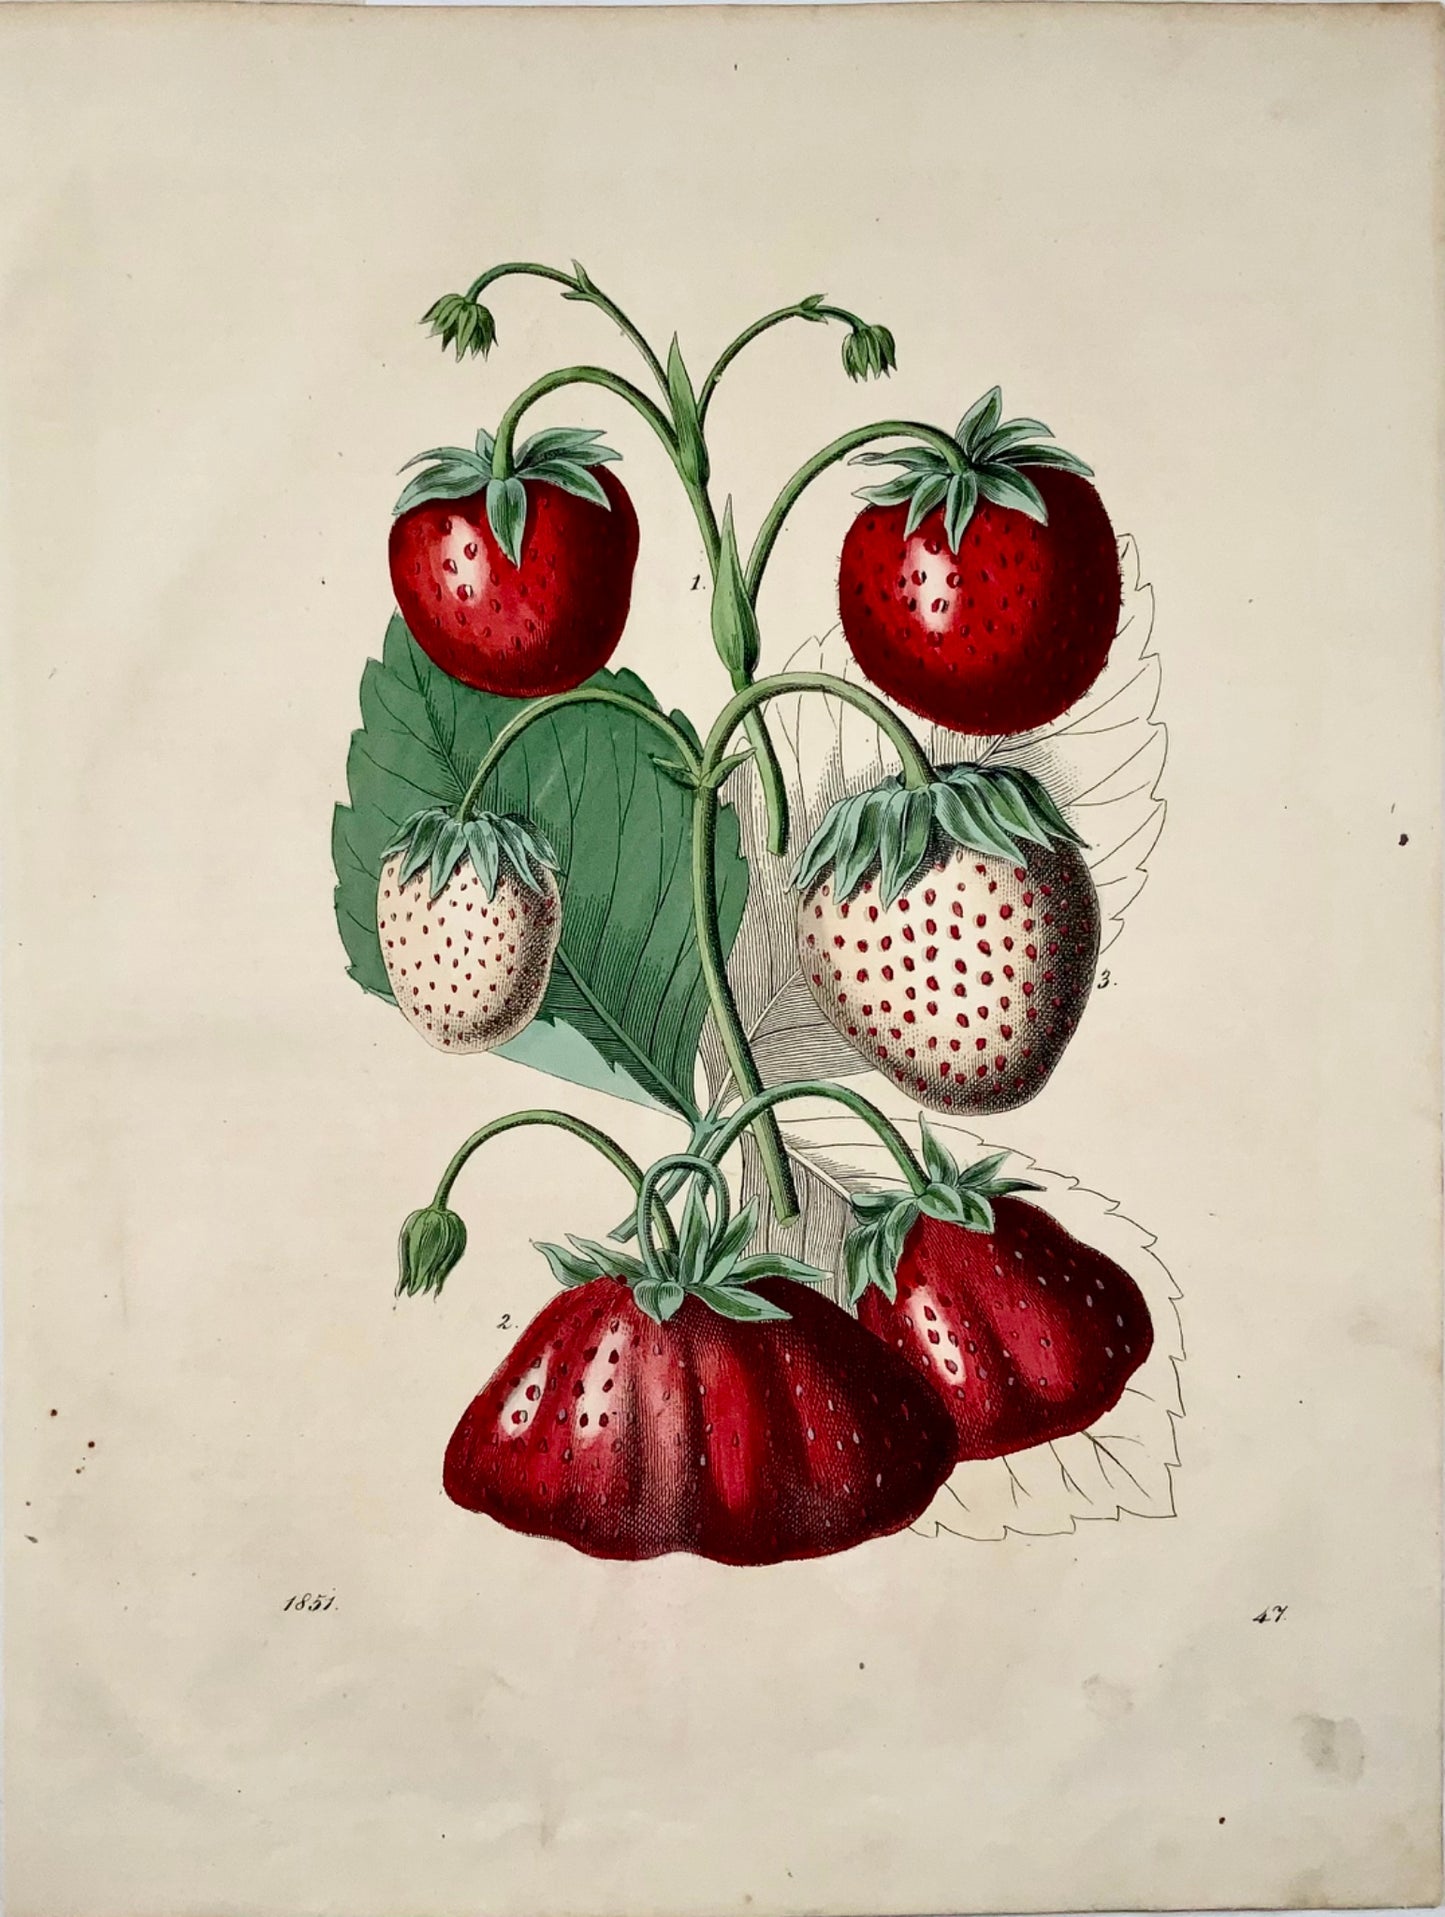 1851 Fragole, bella litografia colorata a mano 4to, frutta 